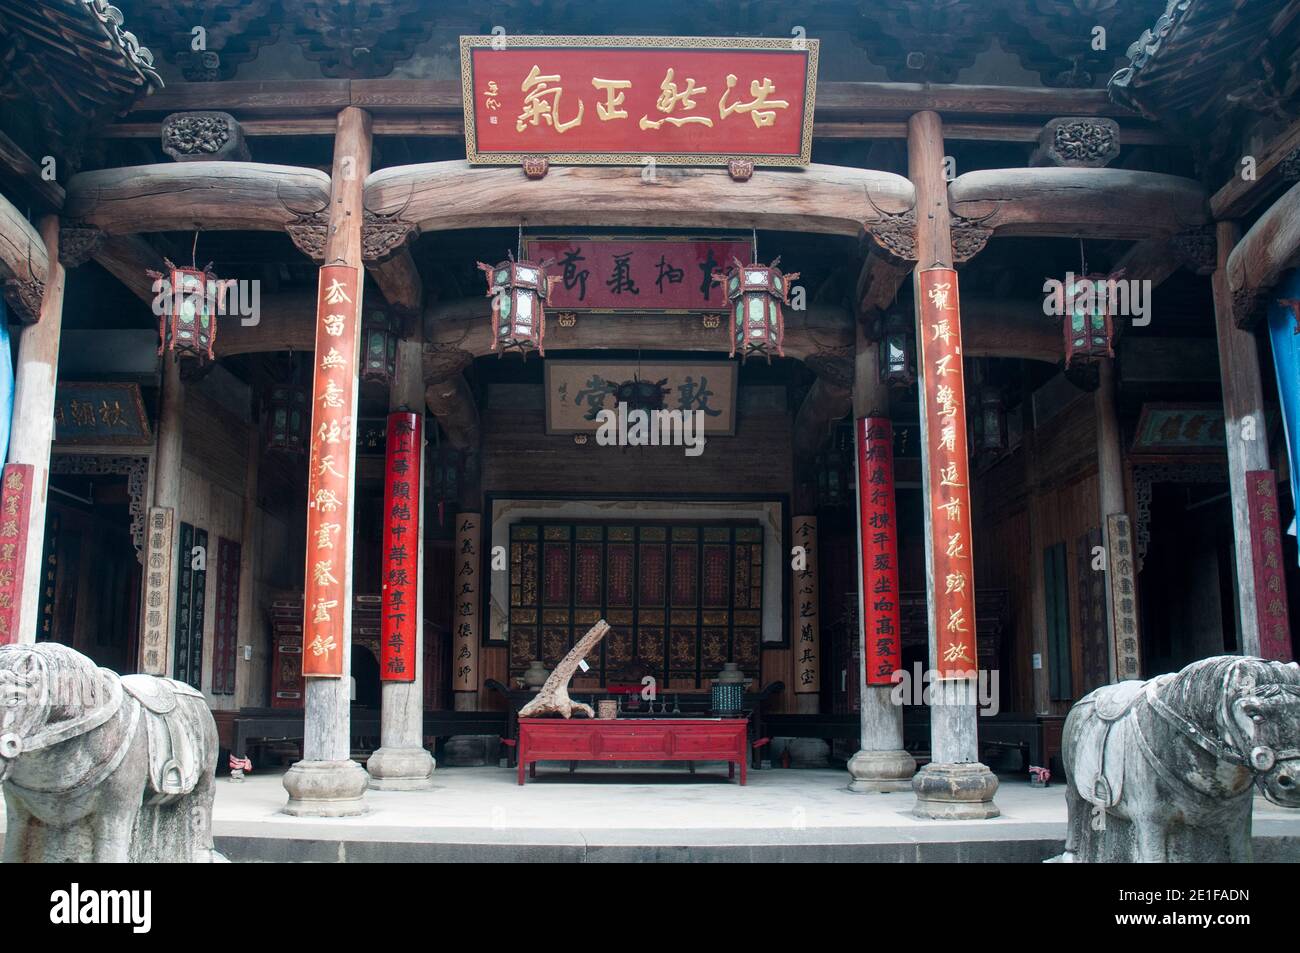 Une salle ancestrale dans le village du patrimoine de Hongcun, datant de 400-500 ans des dynasties Ming et Qing. Région de Huizhou, province d'Anhui, Chine Banque D'Images